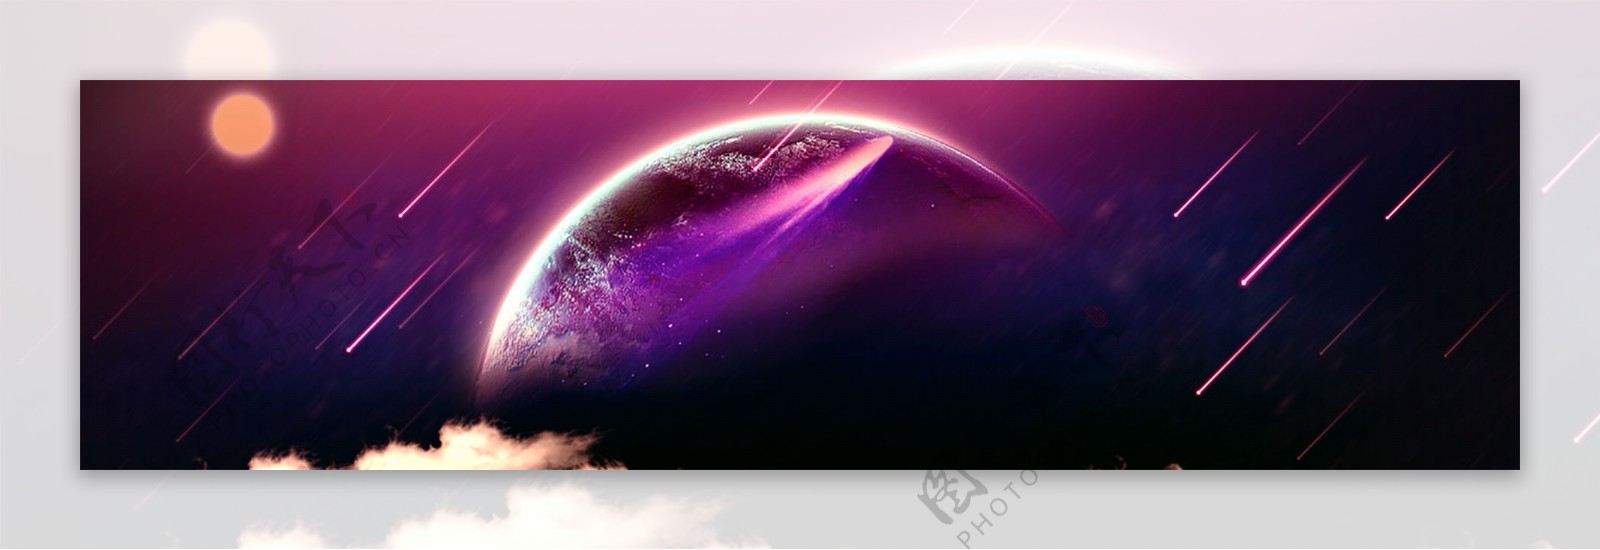 紫色线条banner背景素材